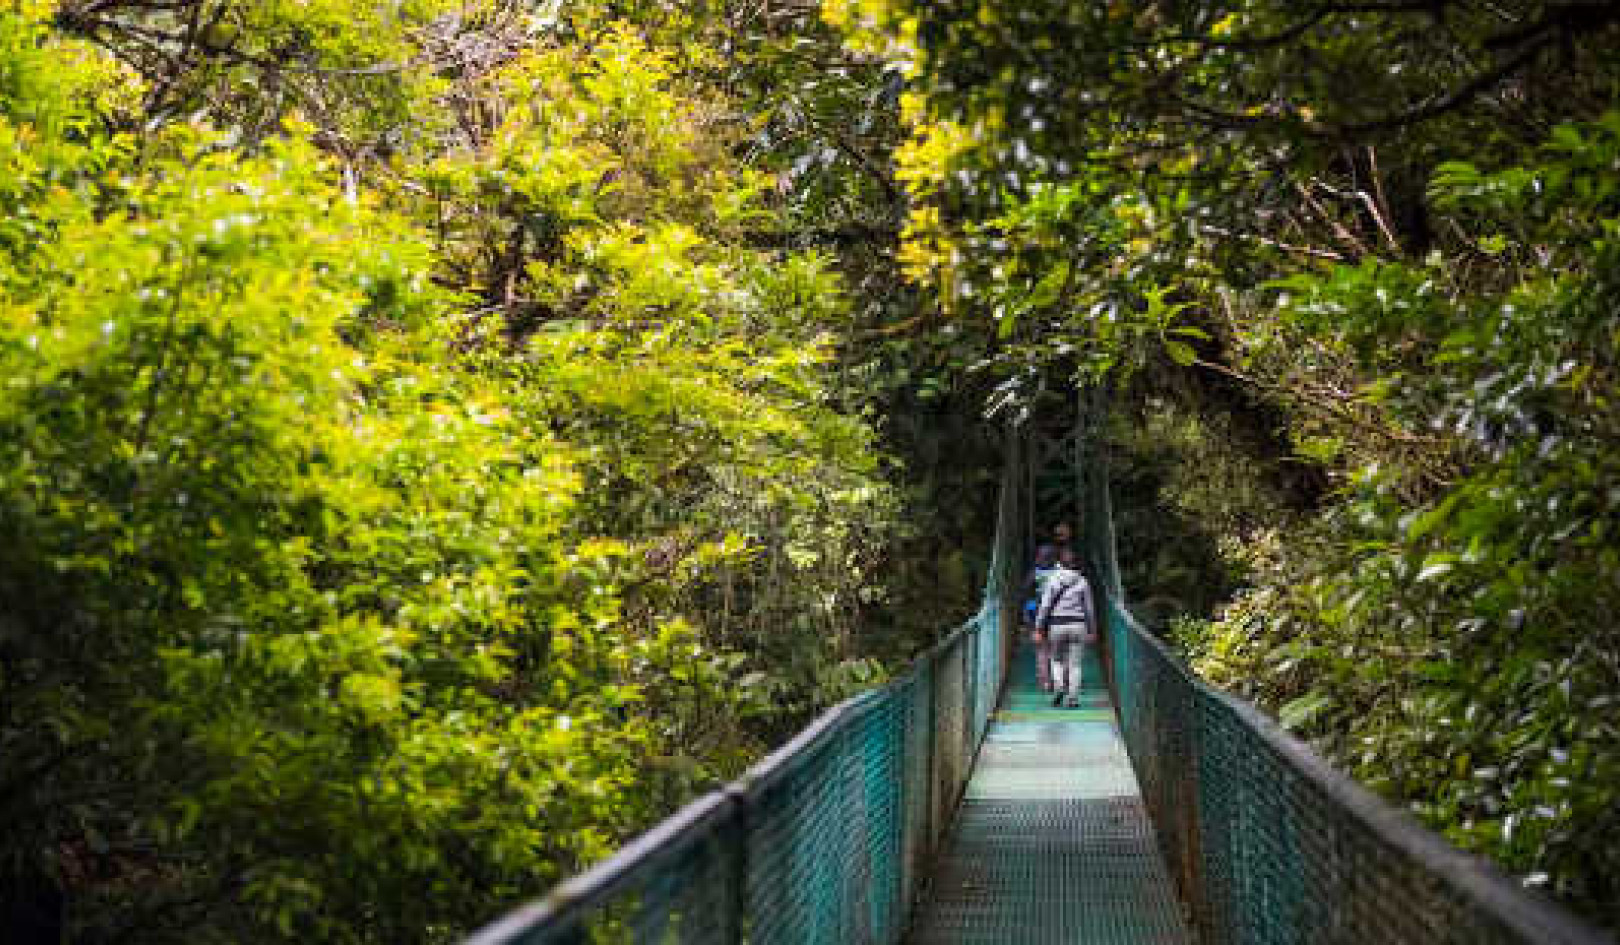 Kuinka biologisen monimuotoisuuden suojelu on kannattanut Costa Ricalla